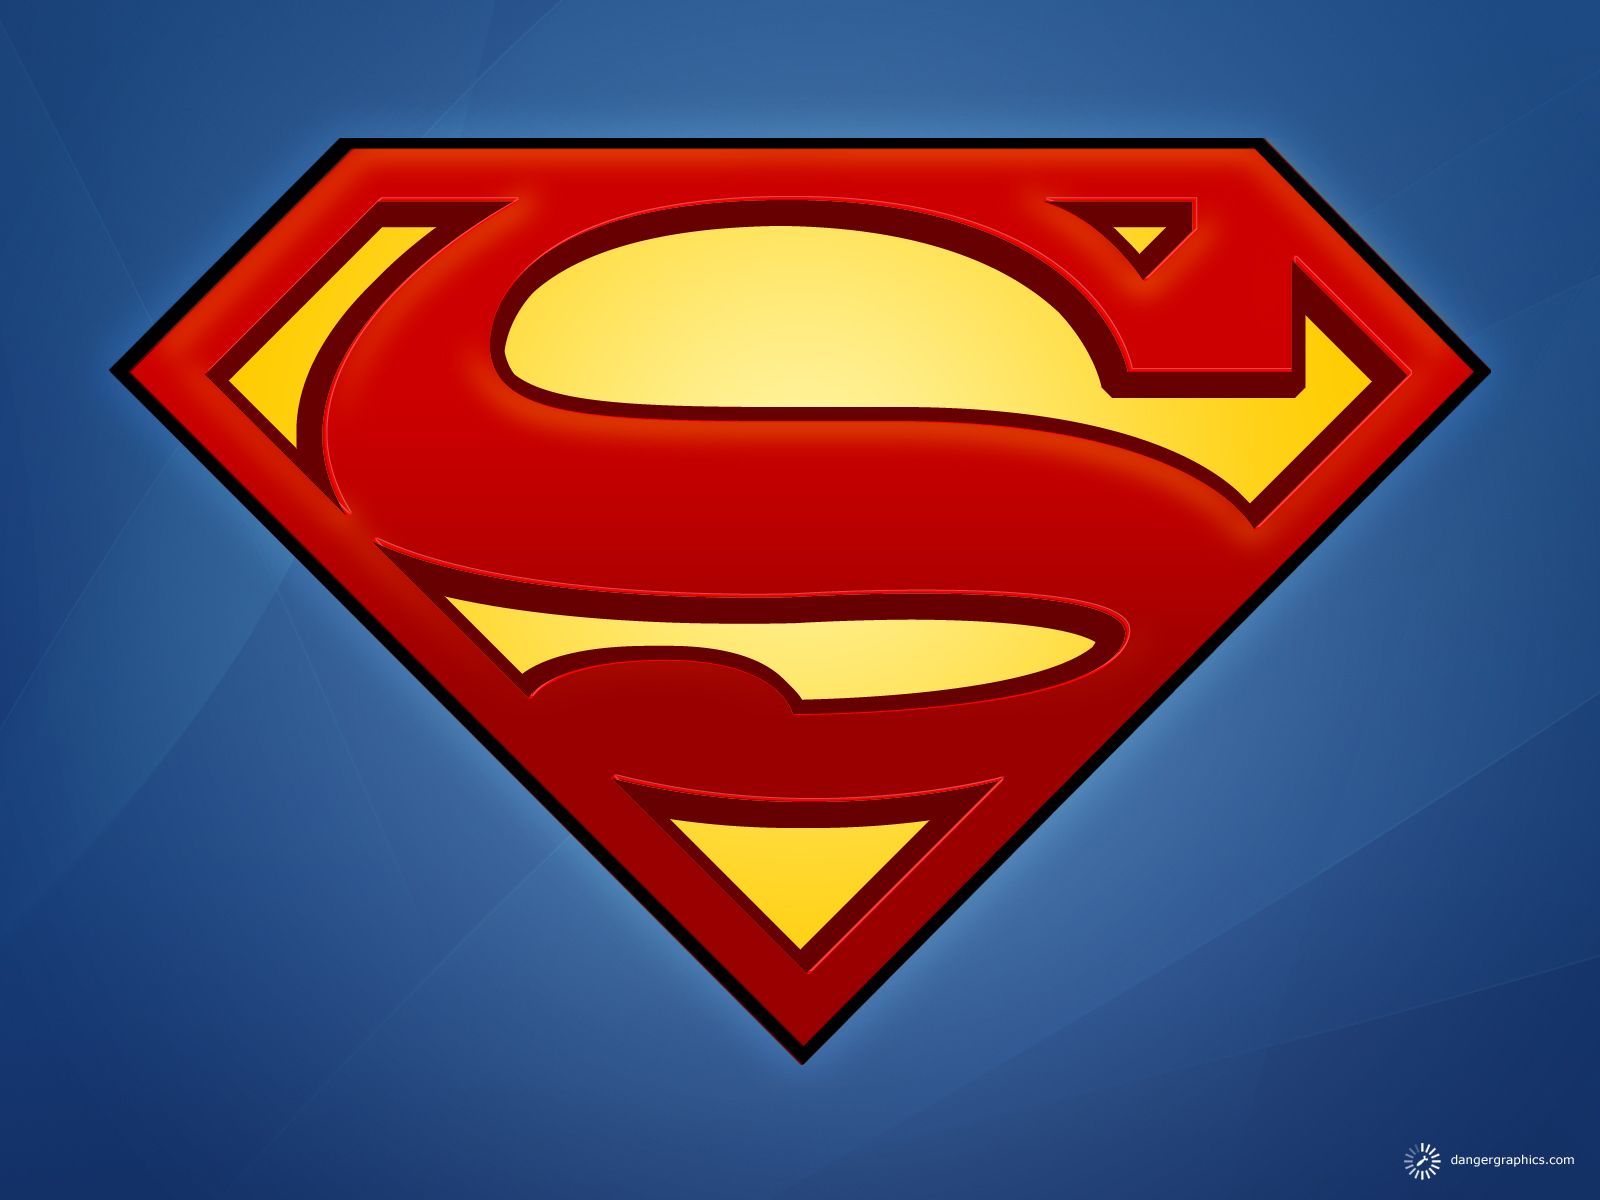 Superman Logo Wallpaper | 1600x1200 | ID:26055